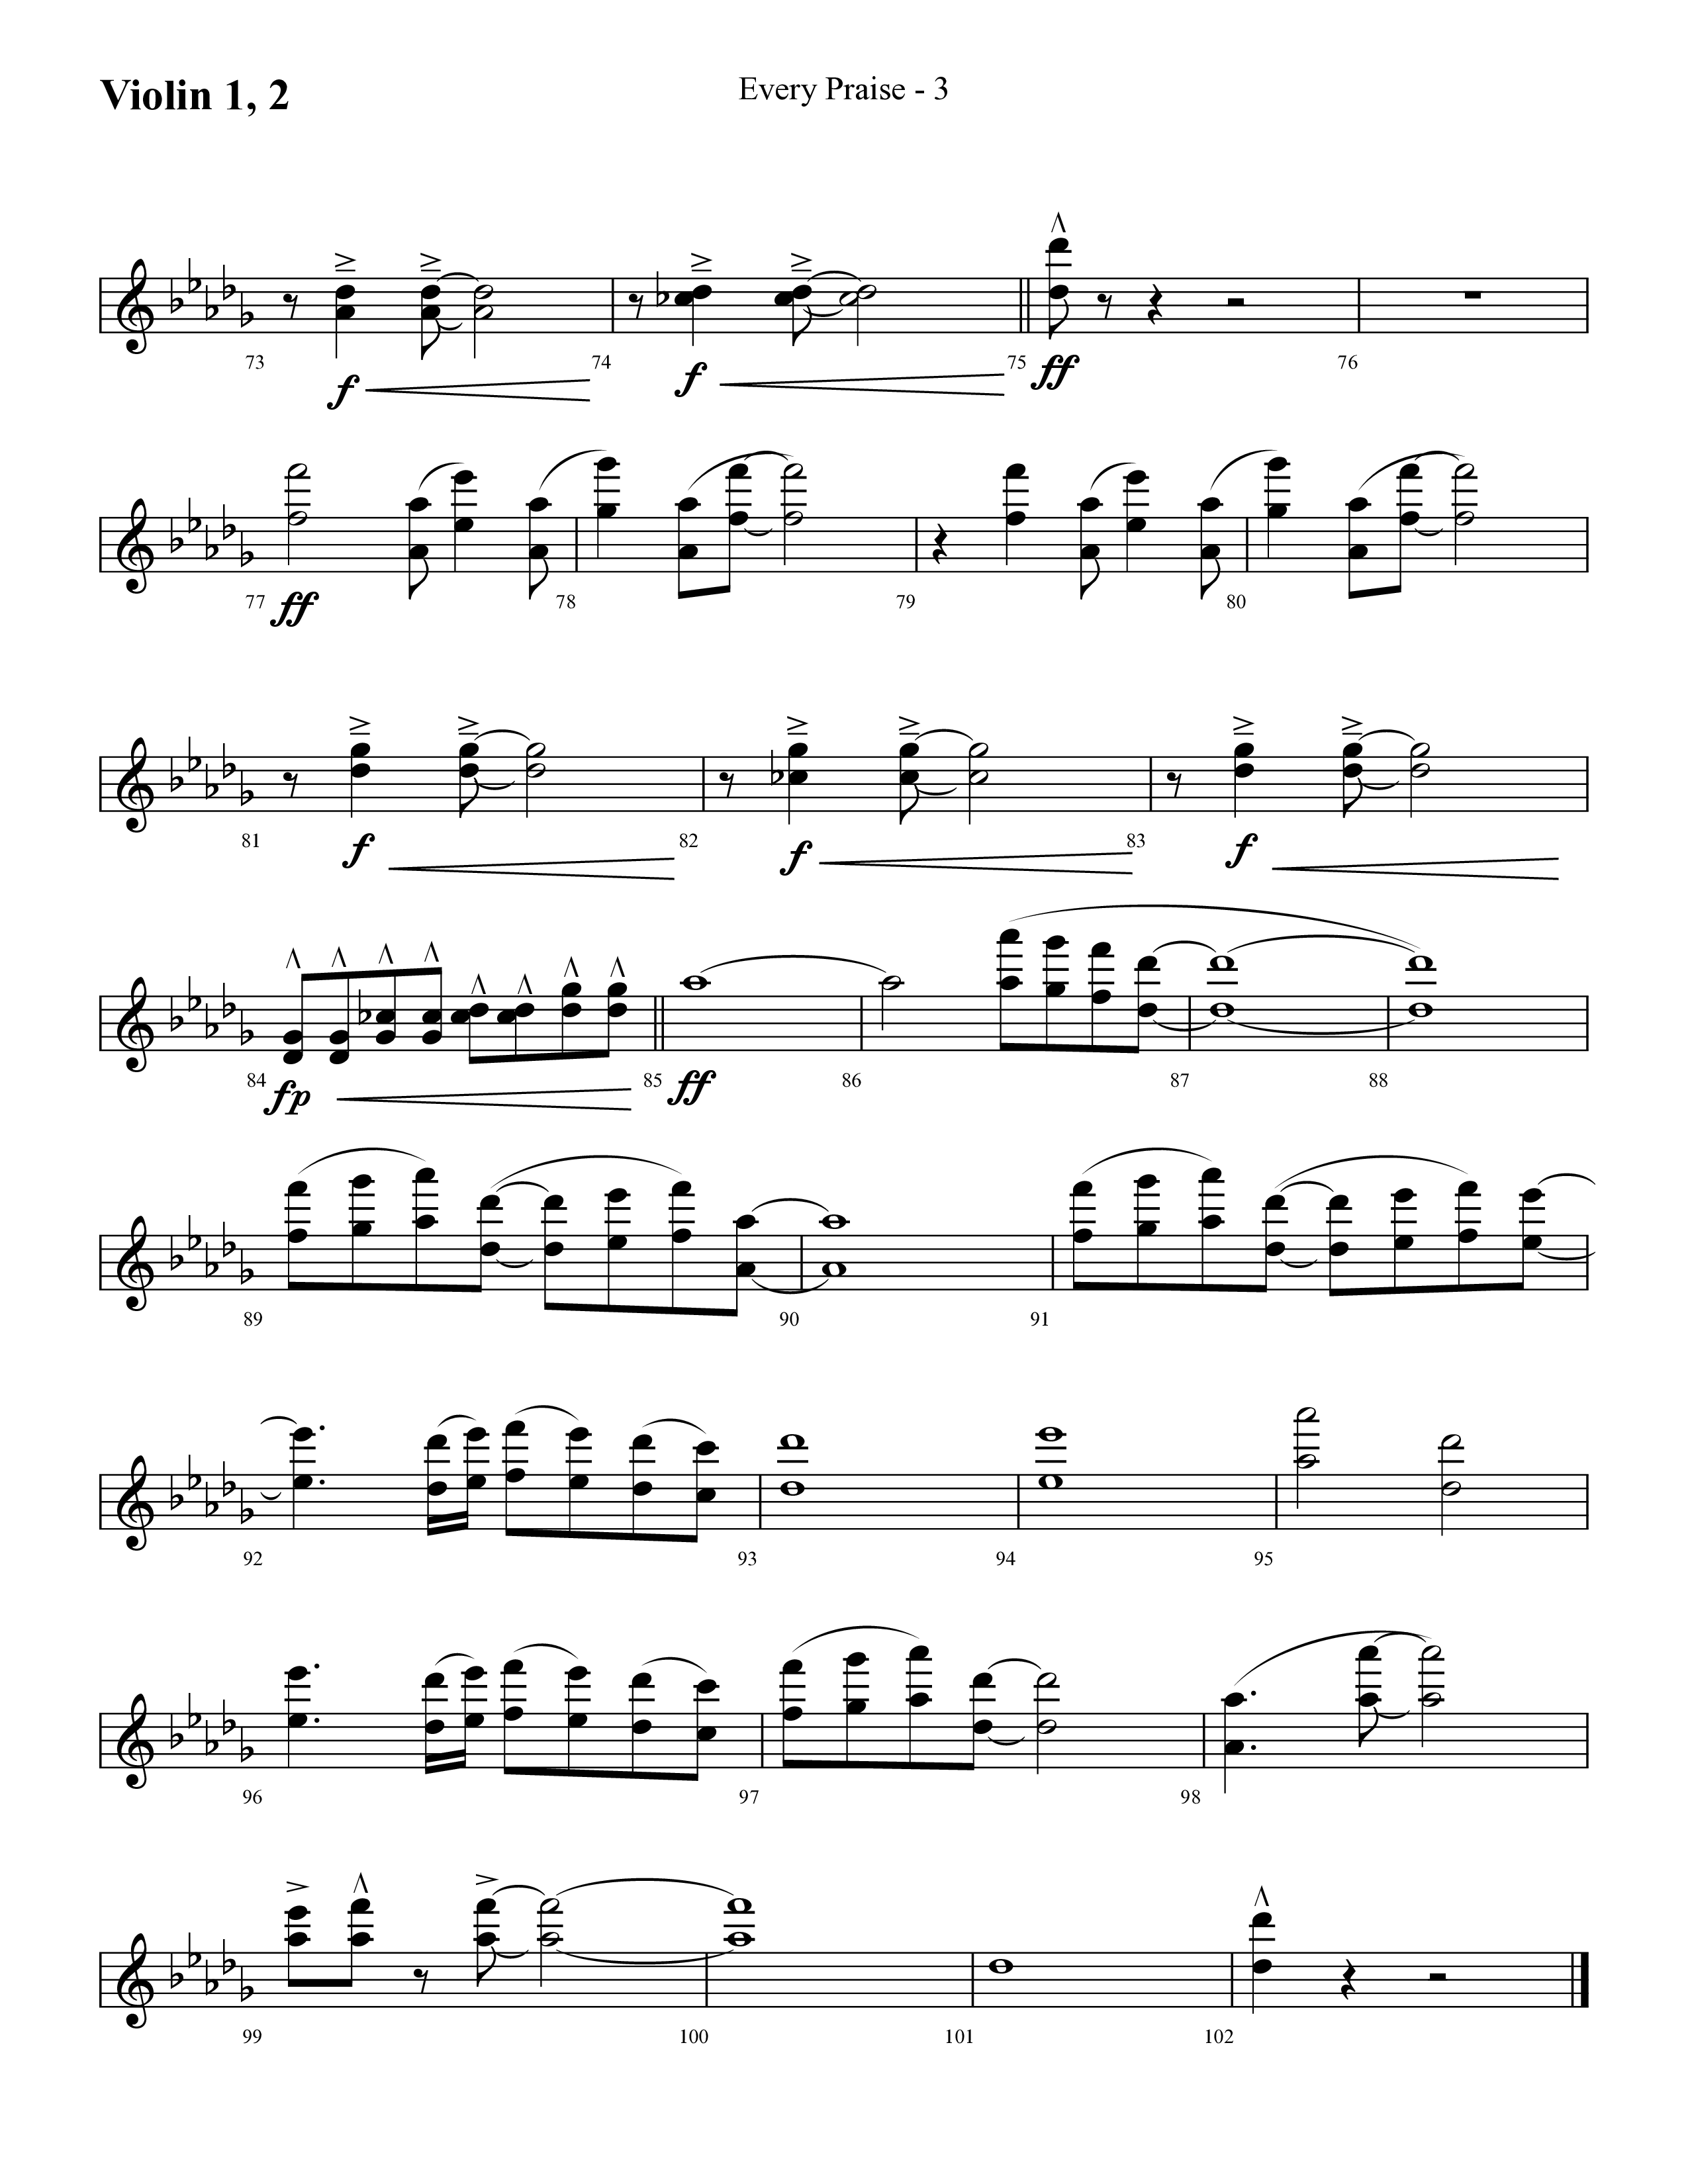 Every Praise (Choral Anthem SATB) Violin 1/2 (Lifeway Choral / Arr. Cliff Duren)